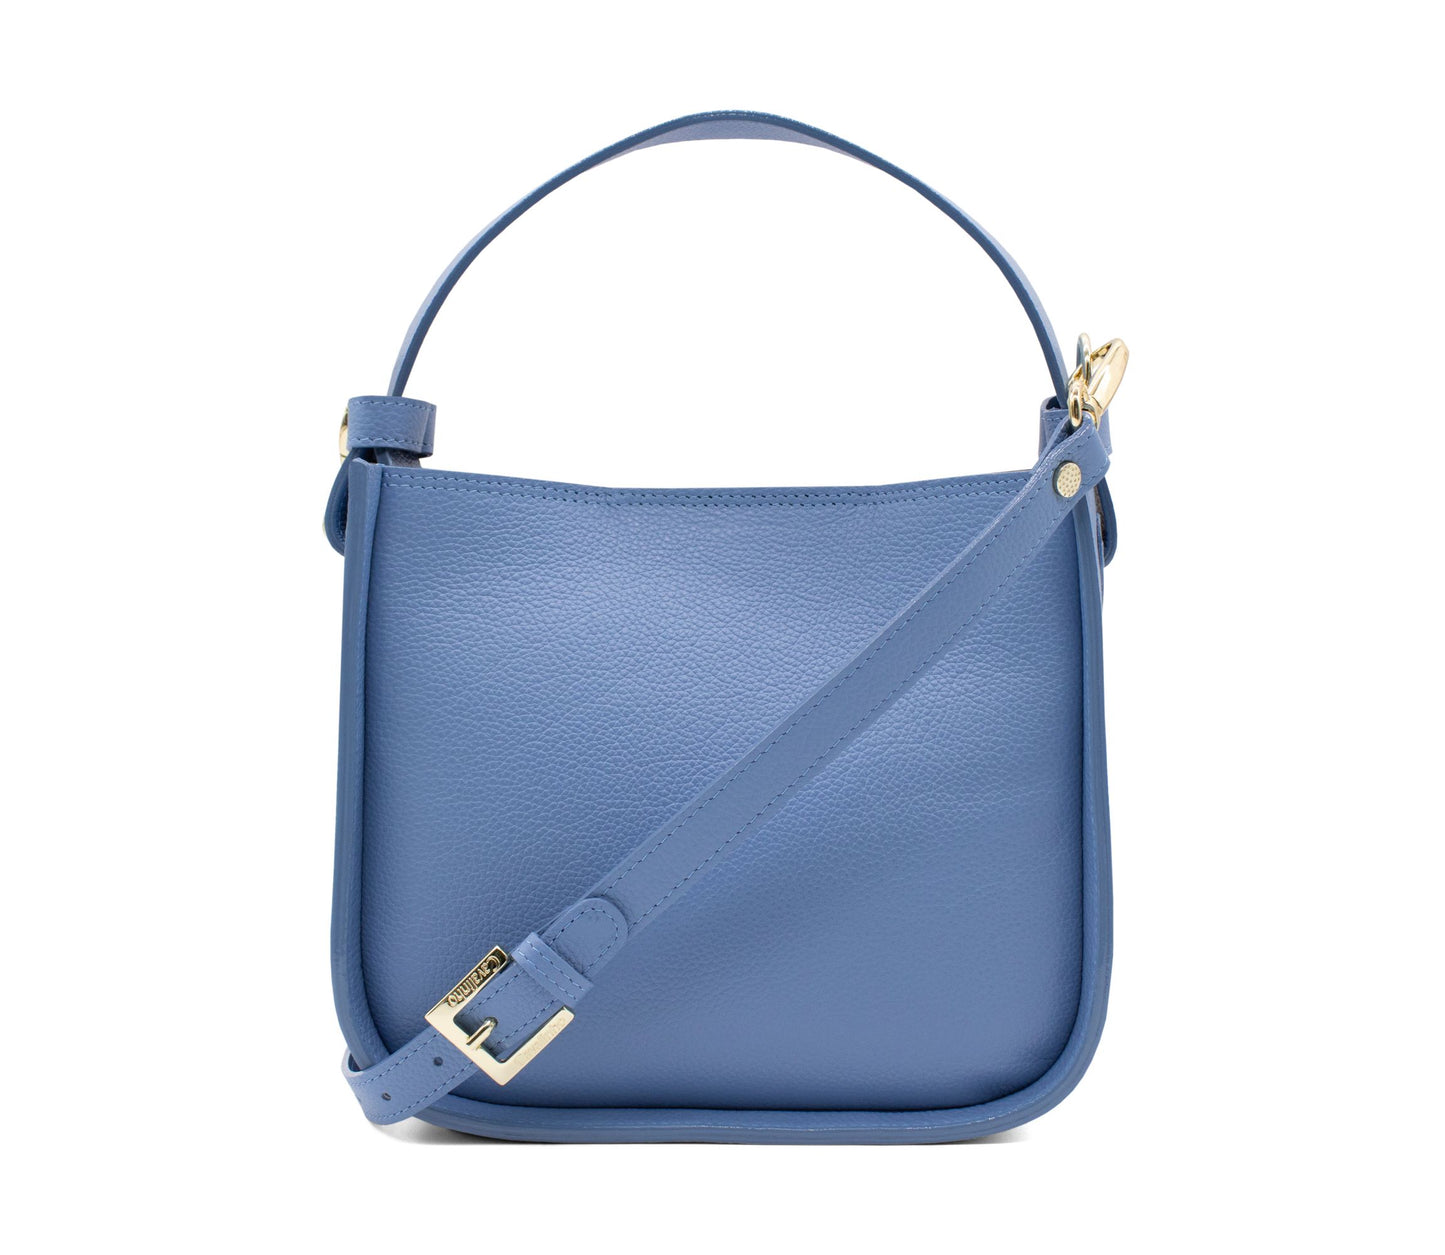 #color_ CornflowerBlue | Cavalinho Muse Leather Handbag - CornflowerBlue - 18300475.10_4